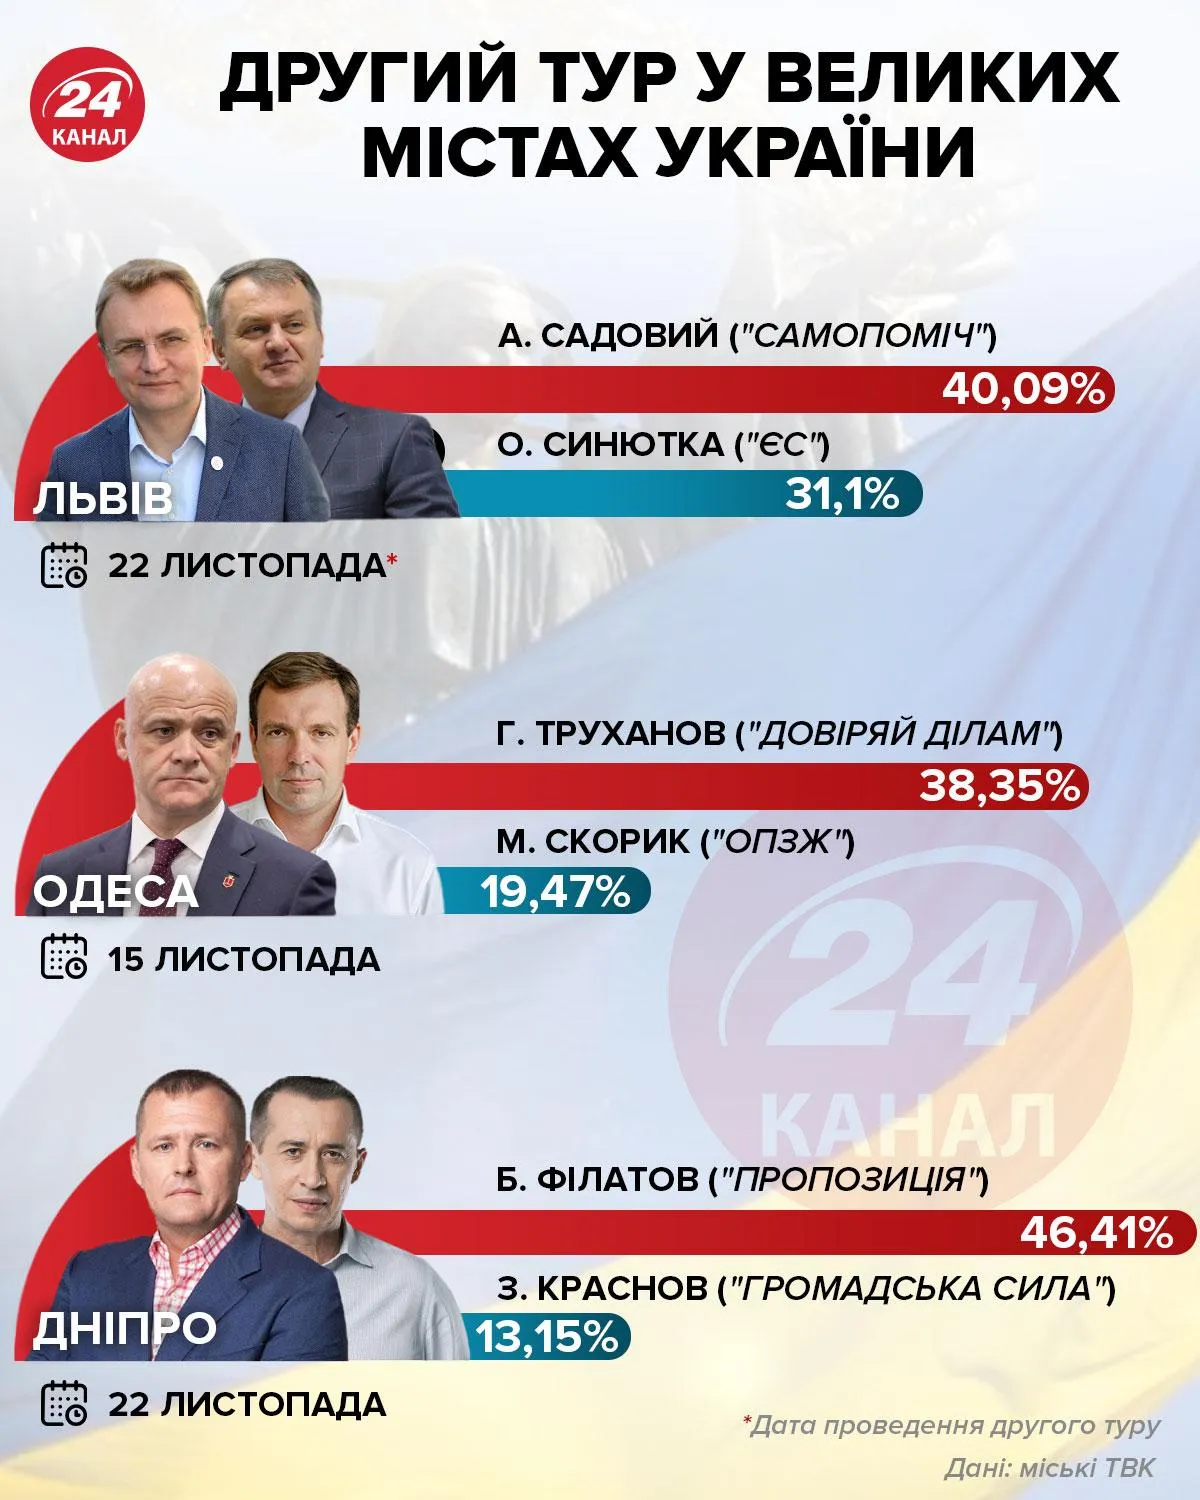 Другий тур місцевих виборів у Львові, Одесі та Дніпрі  Інфографіка 24 каналу